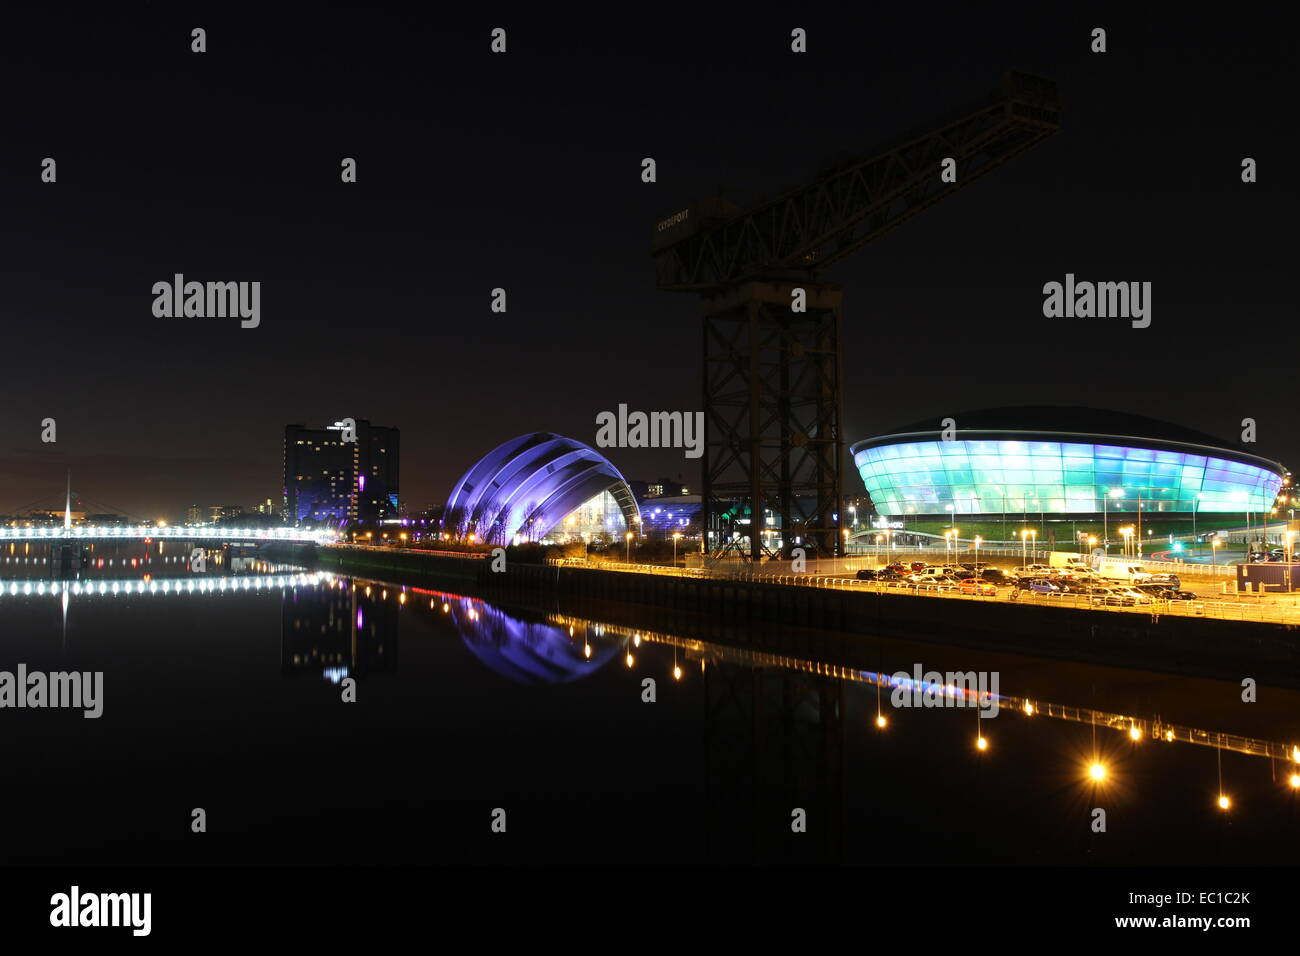 Gürteltier, Hydro und Glocken Brücke Glasgow Schottland Dezember 2014 Stockfoto